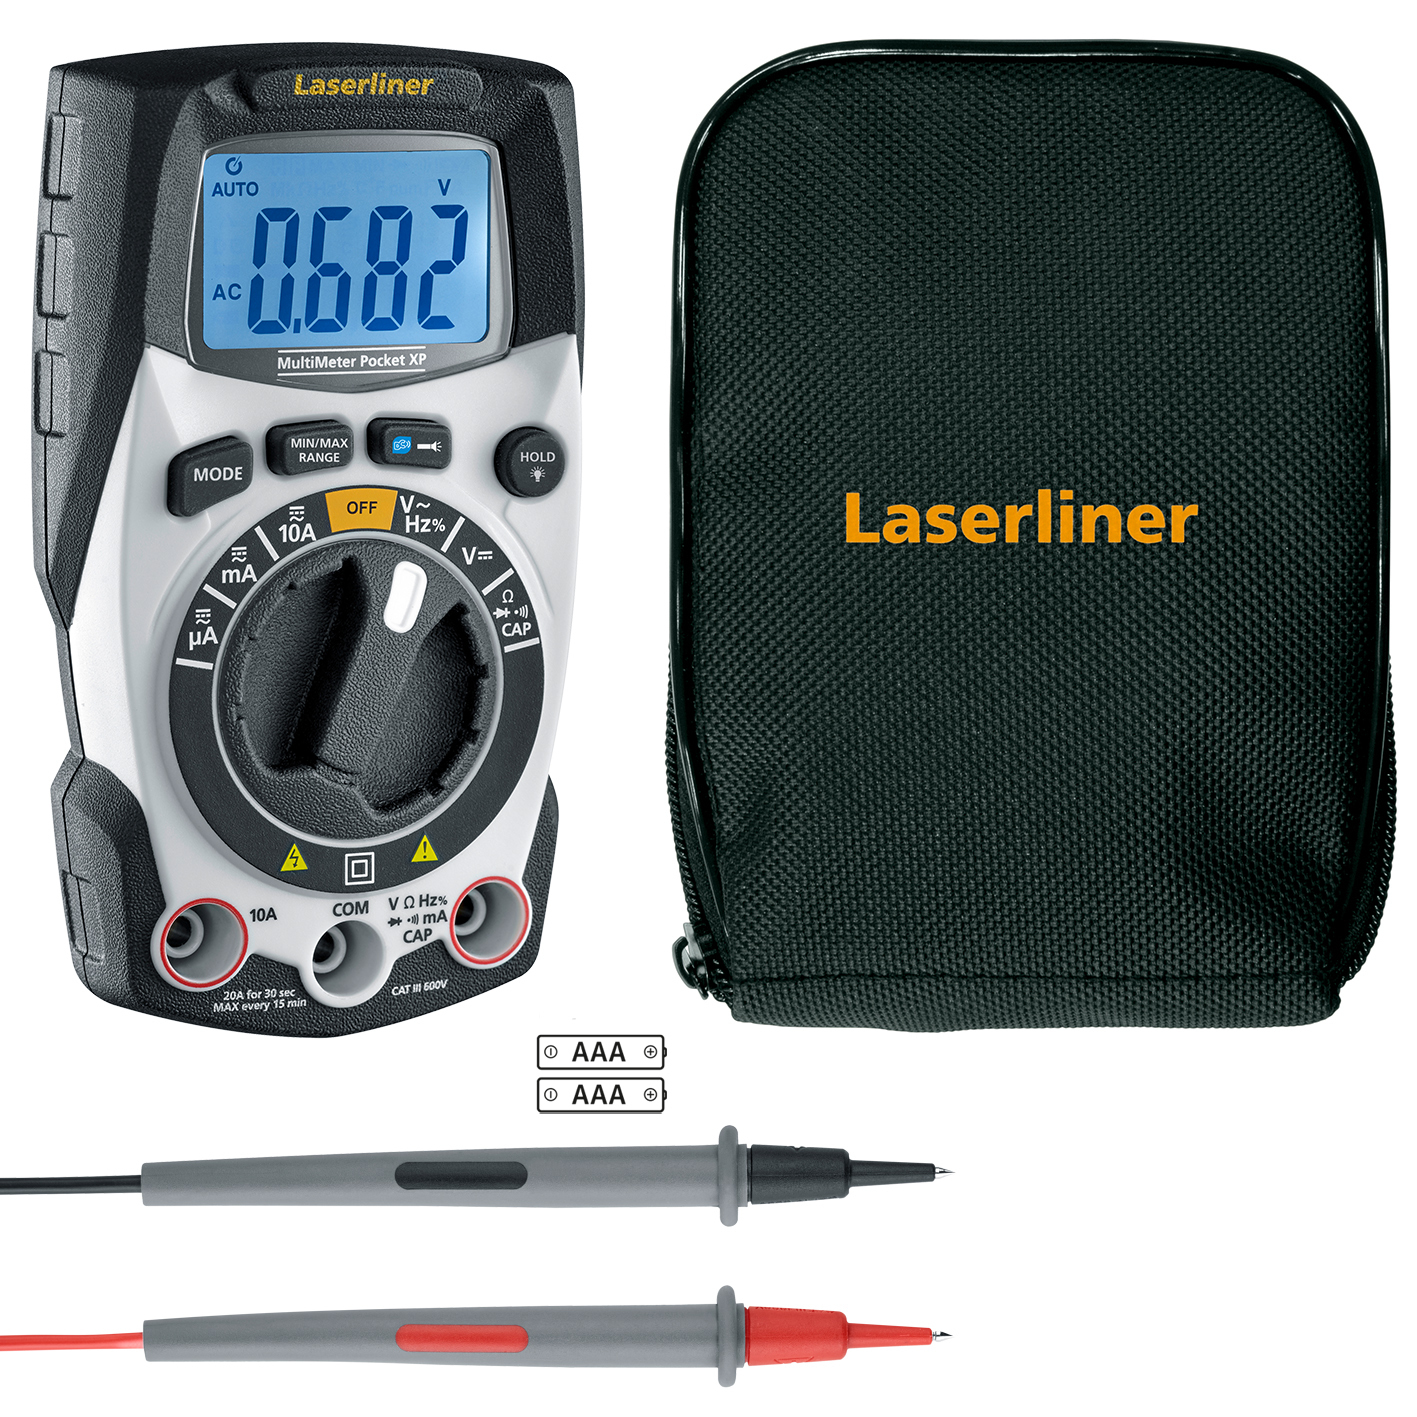 Laserliner MultiMeter Pocket XP Spannungsprüfer